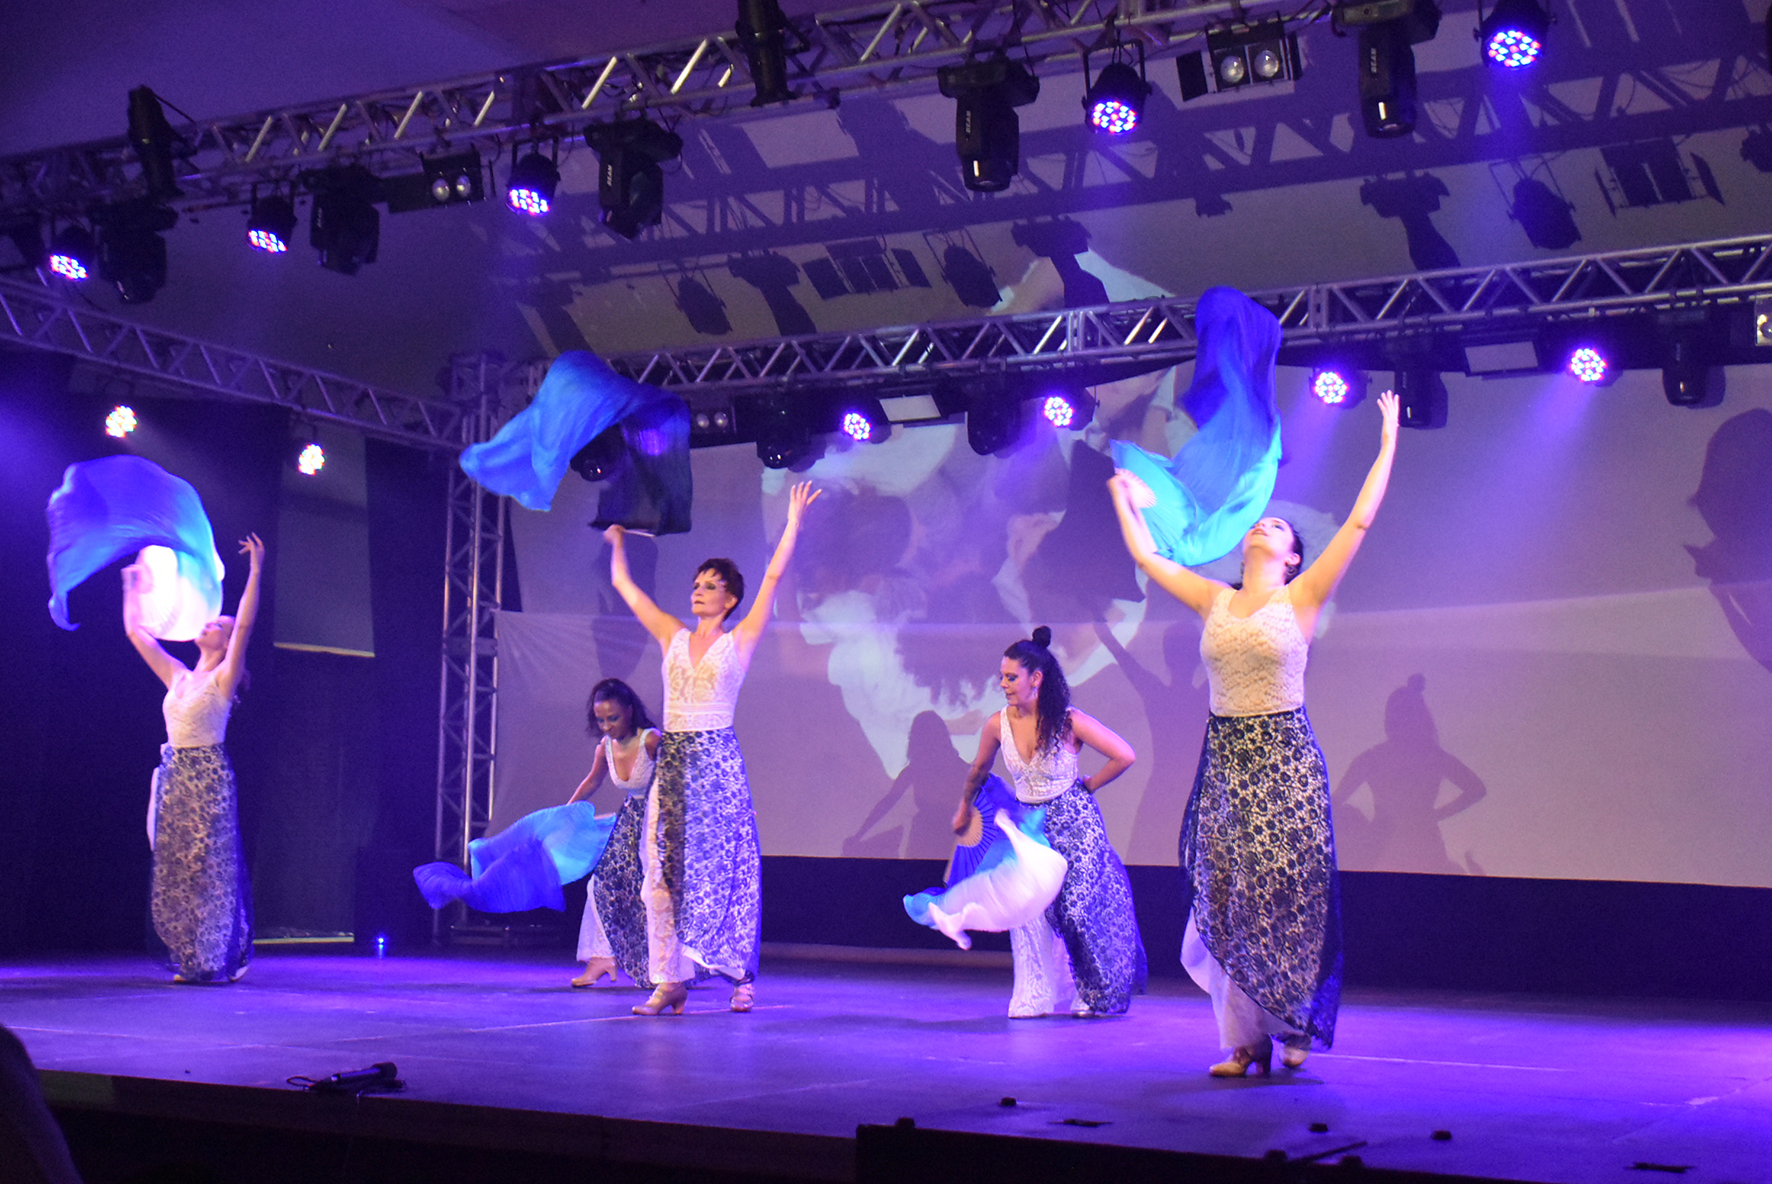 Festival de Dança de Erechim segue com apresentações,oficinas e palestra sobre políticas públicas culturais no RS